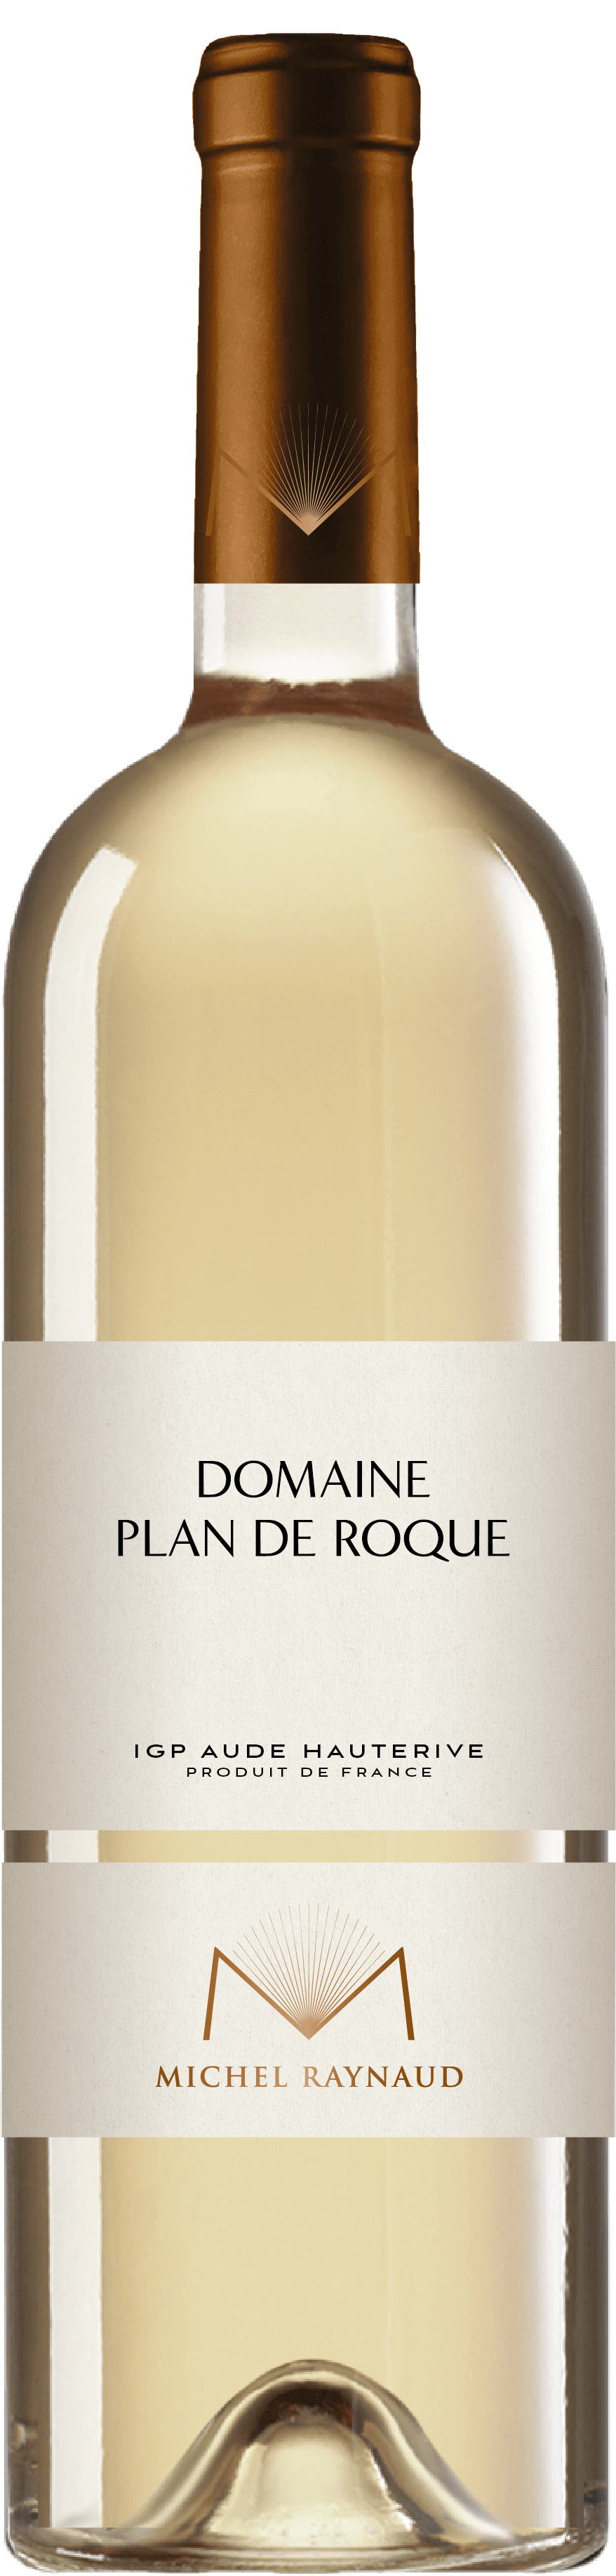 Tirébouché – Vin de France rouge - Michel Raynaud